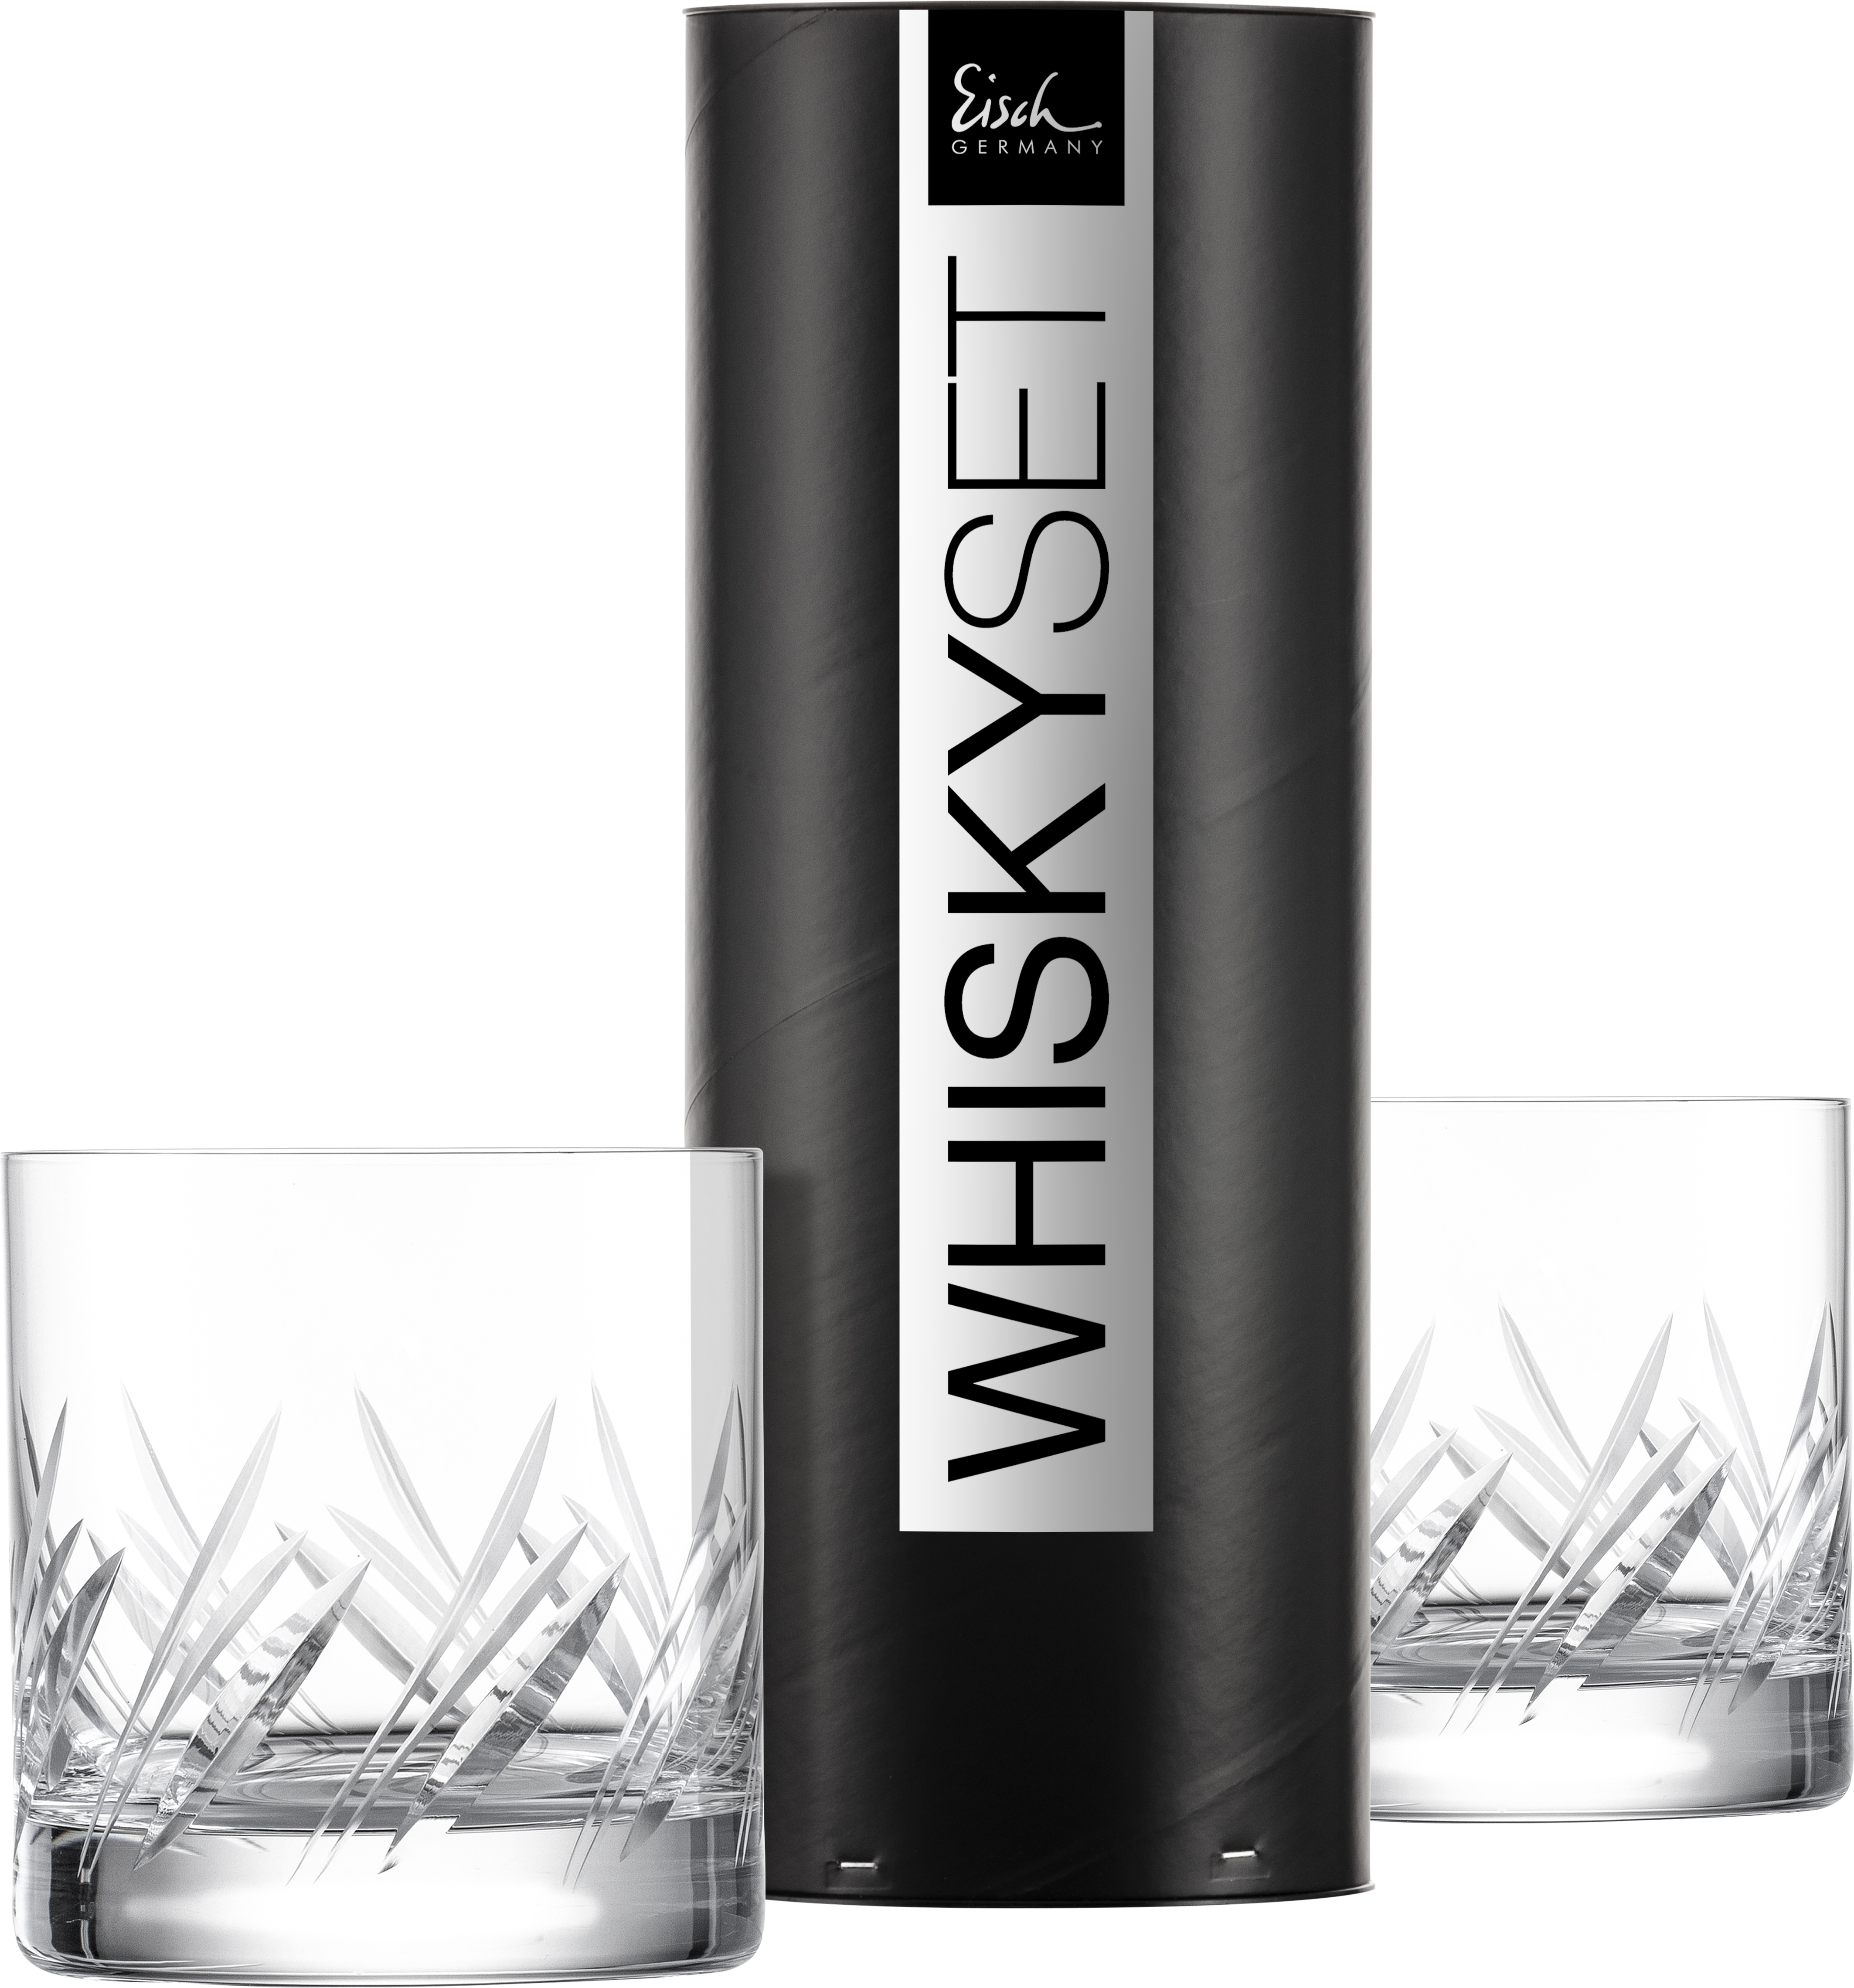 EISCH - Whisky 500/14 Gentleman